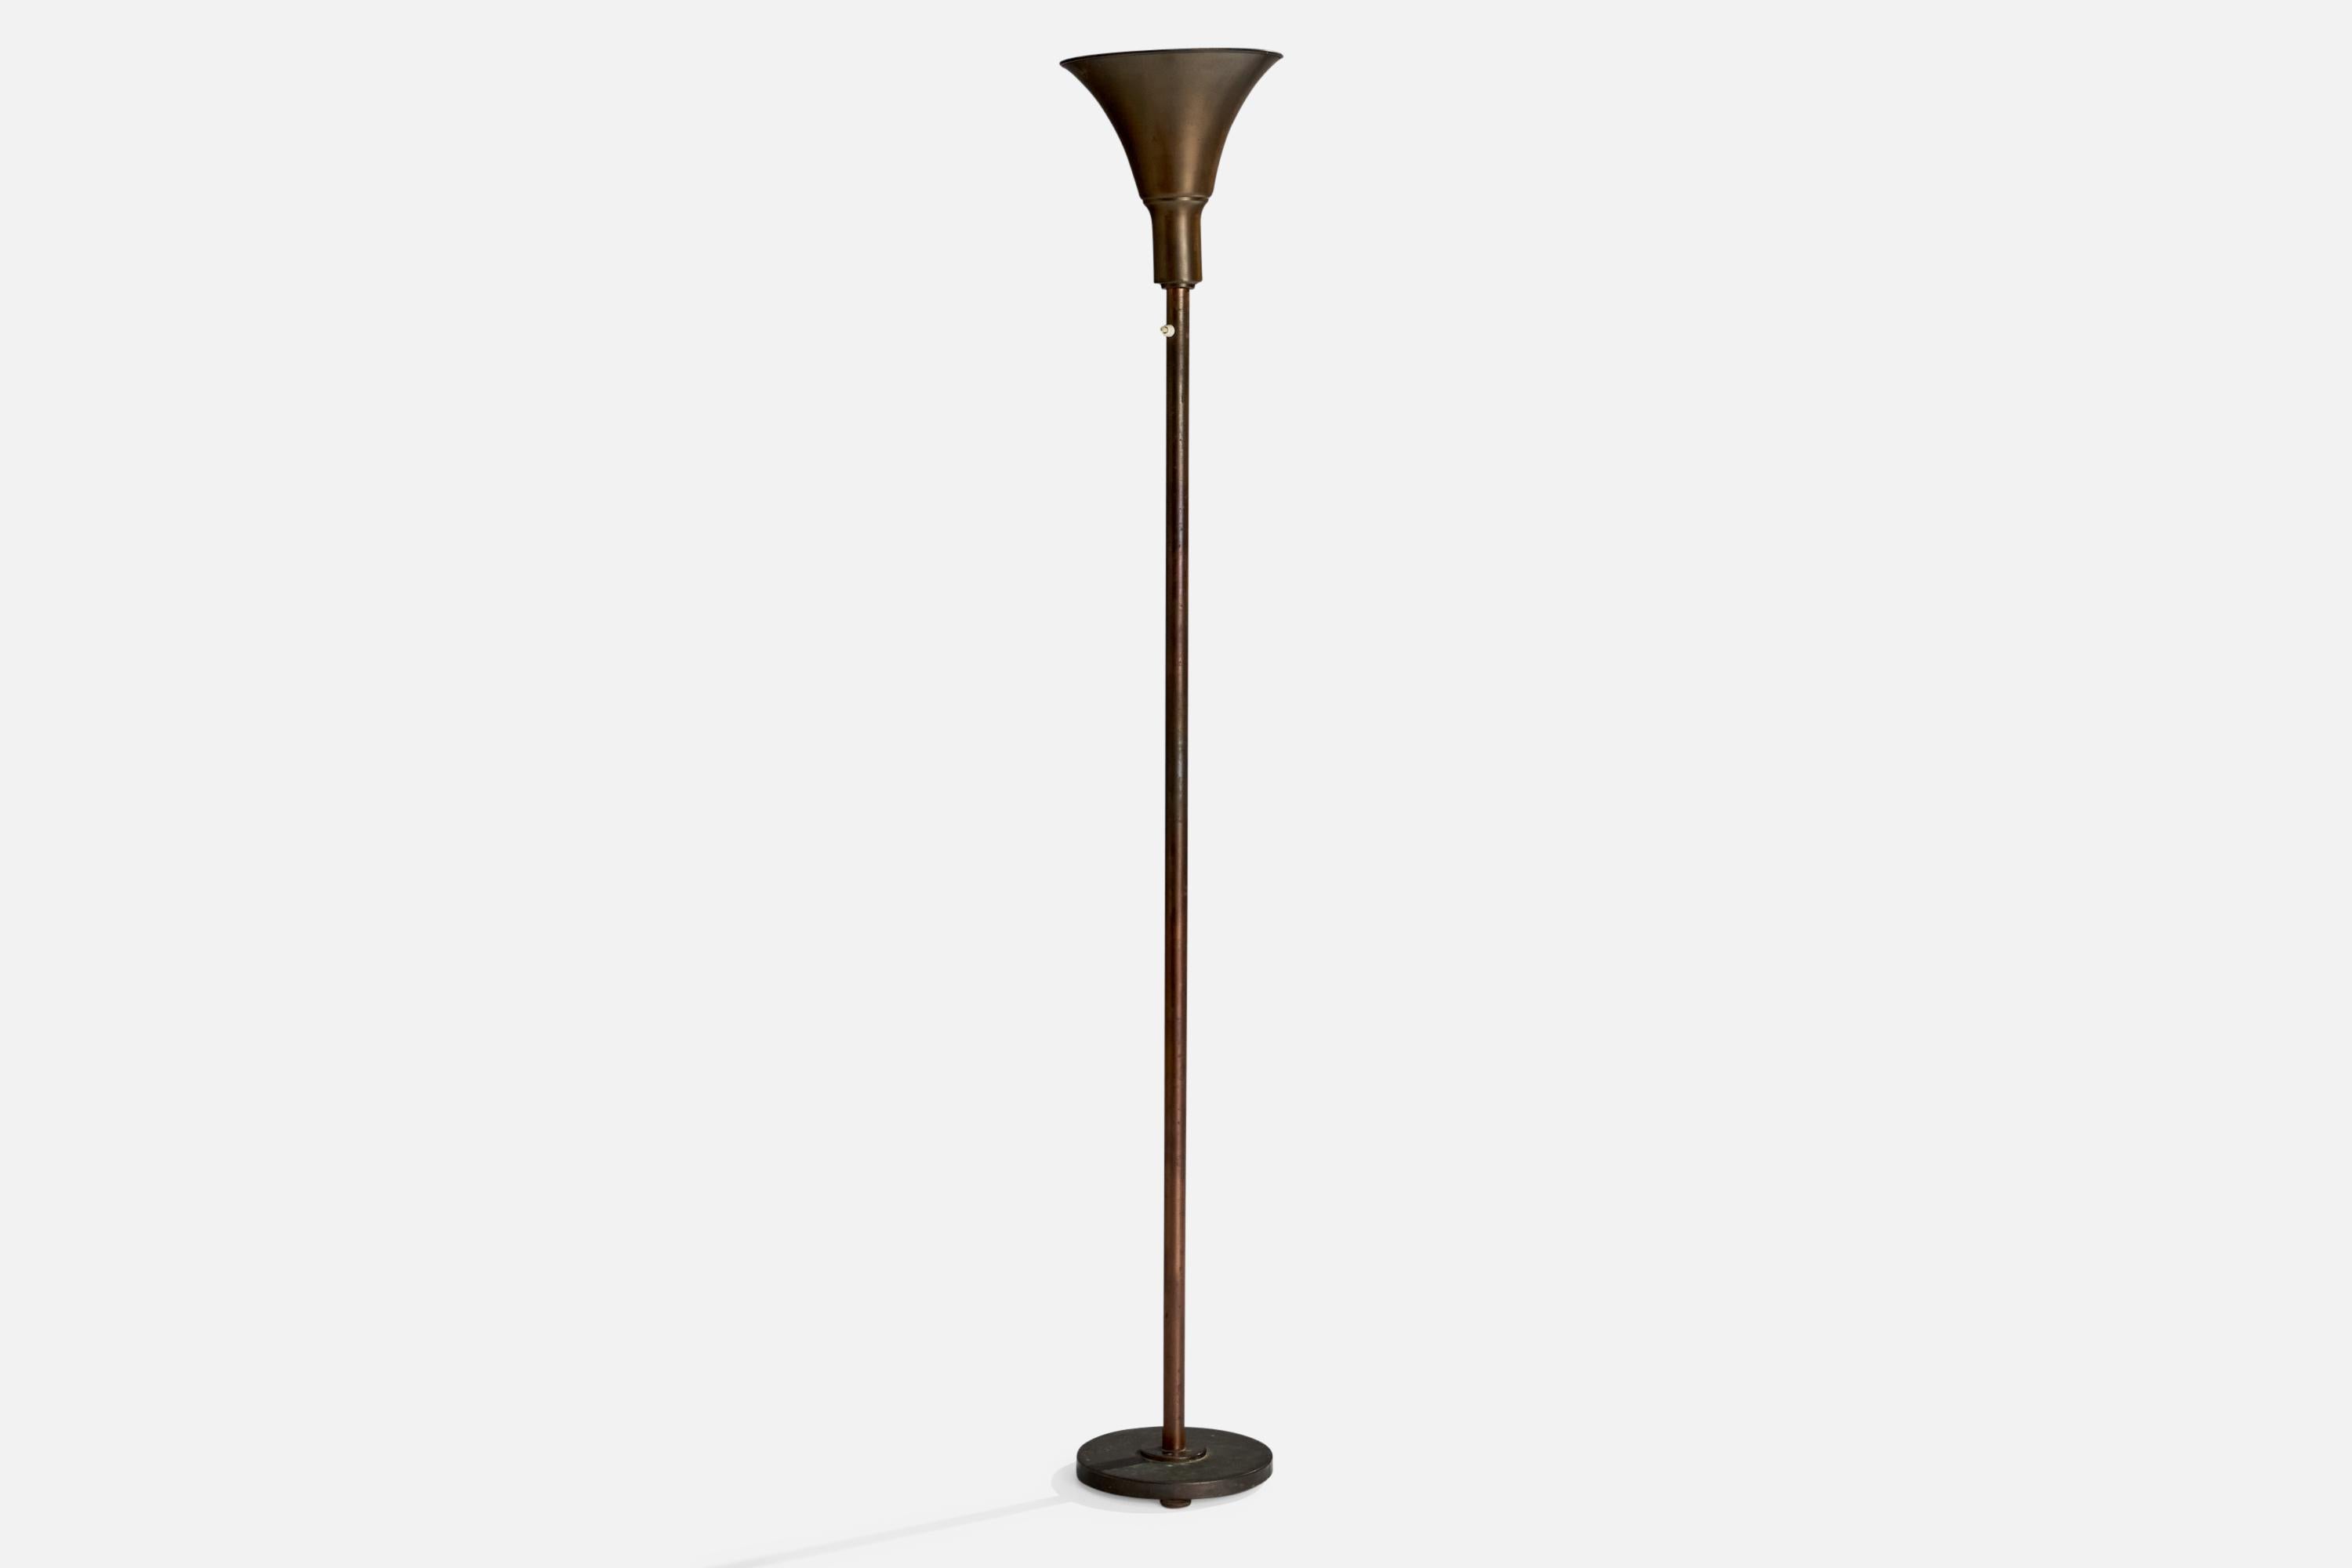 Lampadaire en bronze conçu et produit en Suède, vers les années 1930.

Dimensions hors tout (pouces) : 68.51